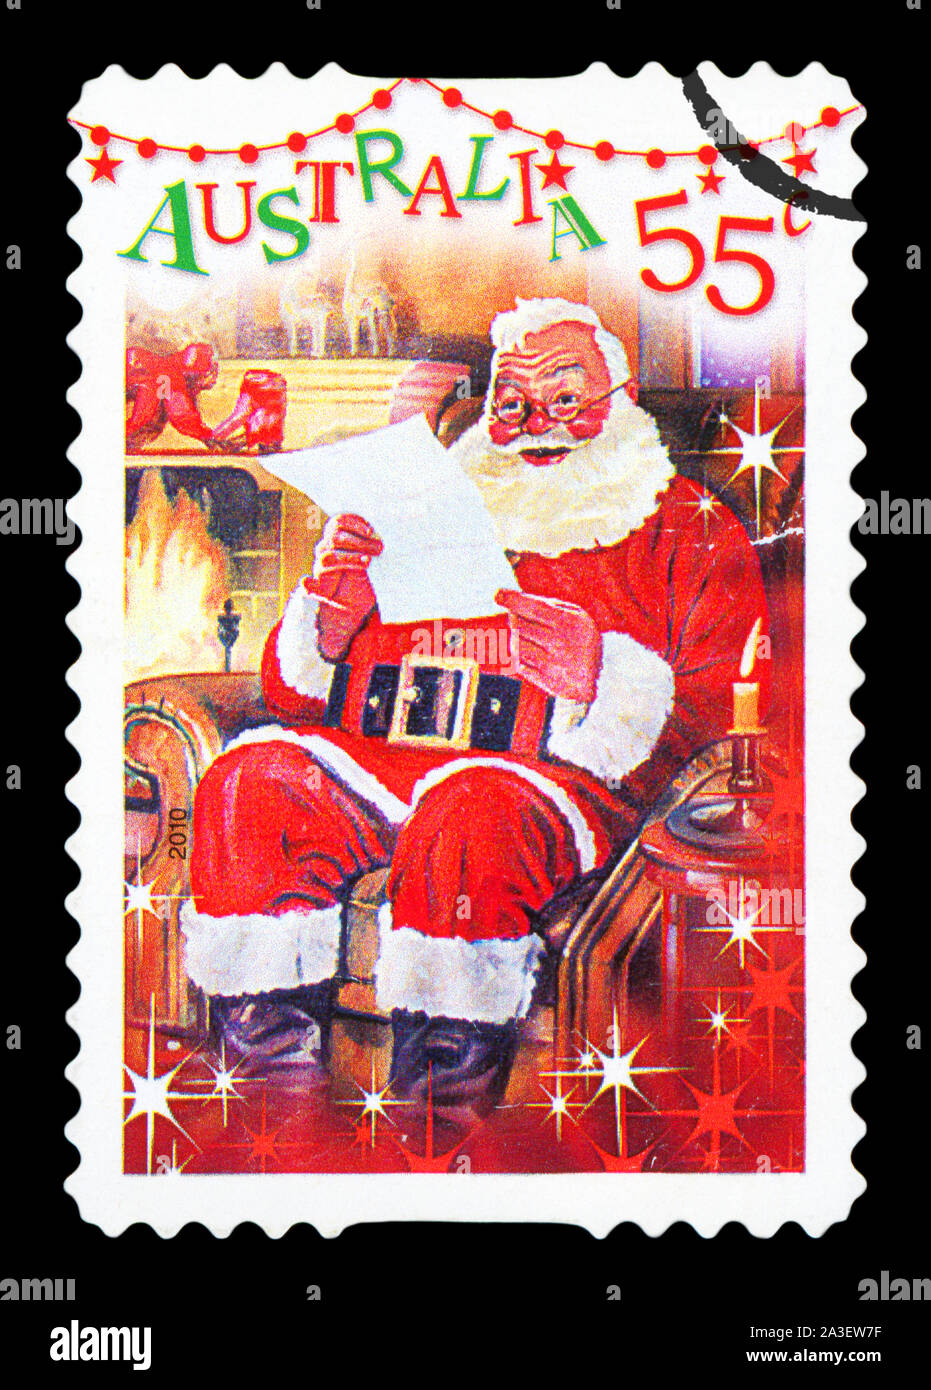 L'AUSTRALIE - circa 2010 : un timbre-poste utilisé à partir de l'Australie, représentant une scène de fête de Santa Claus la lecture d'une lettre par la cheminée, vers 2010. Banque D'Images